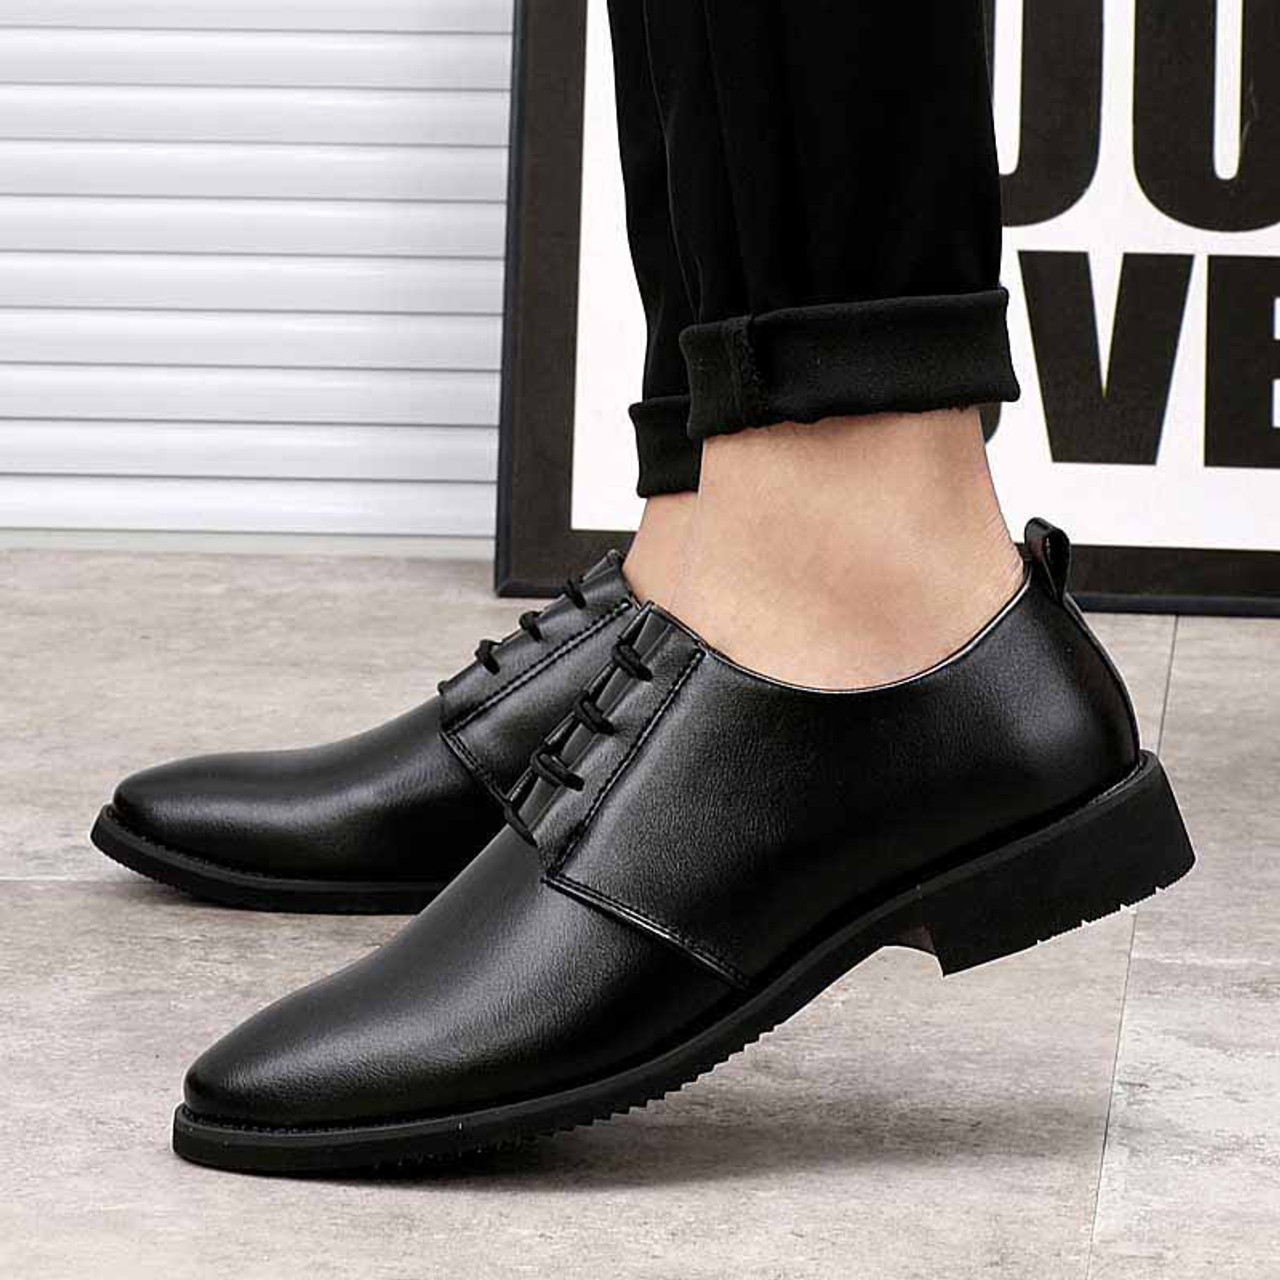 Black simple plain urban leather dress shoe | Mens dress shoes online ...